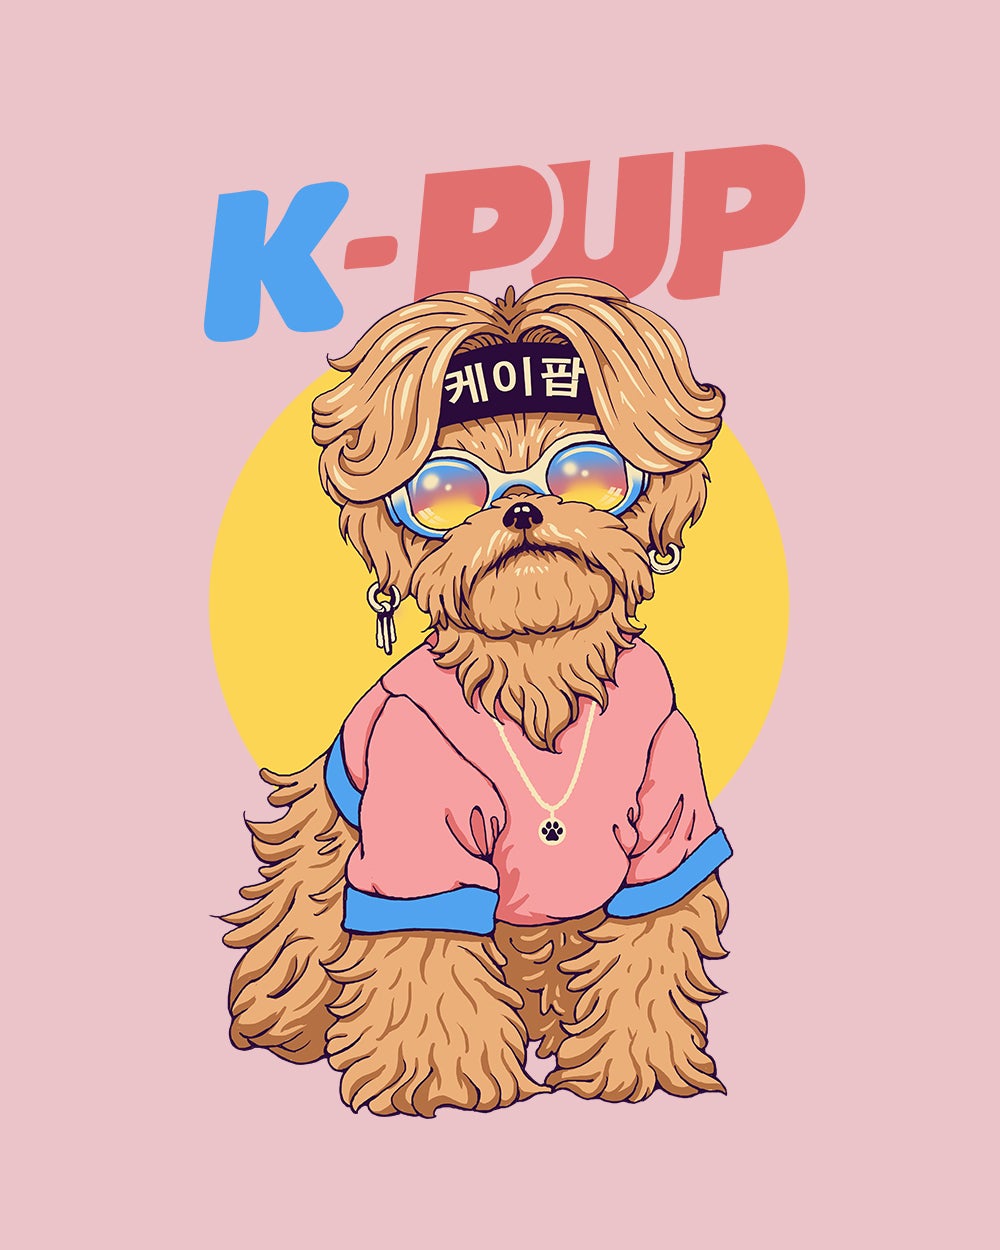 K-Pup Kids T-Shirt Australia Online #colour_pink